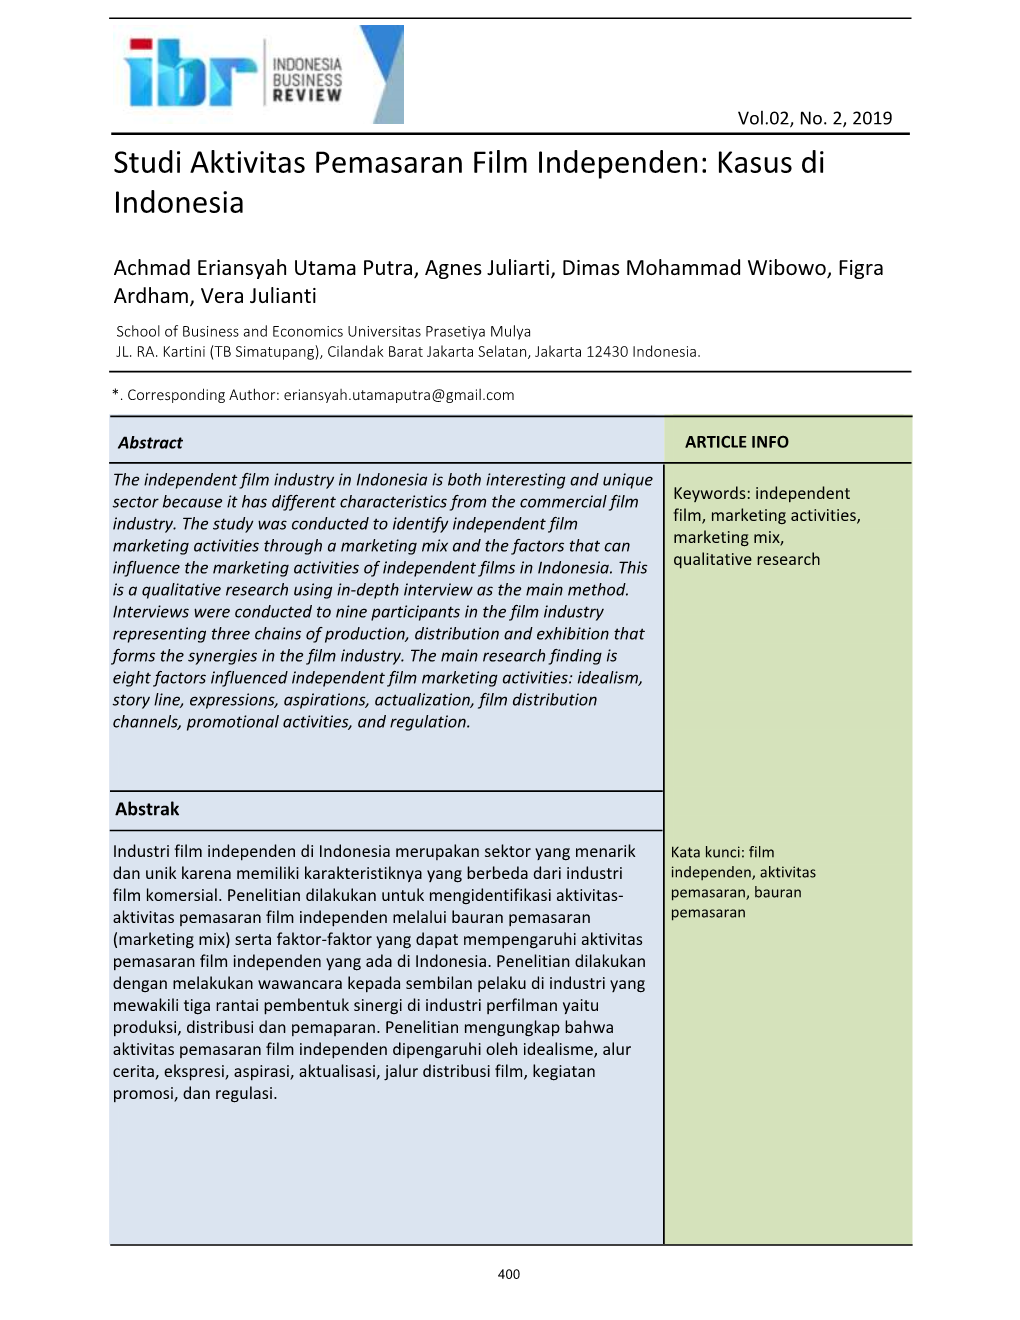 Studi Aktivitas Pemasaran Film Independen: Kasus Di Indonesia